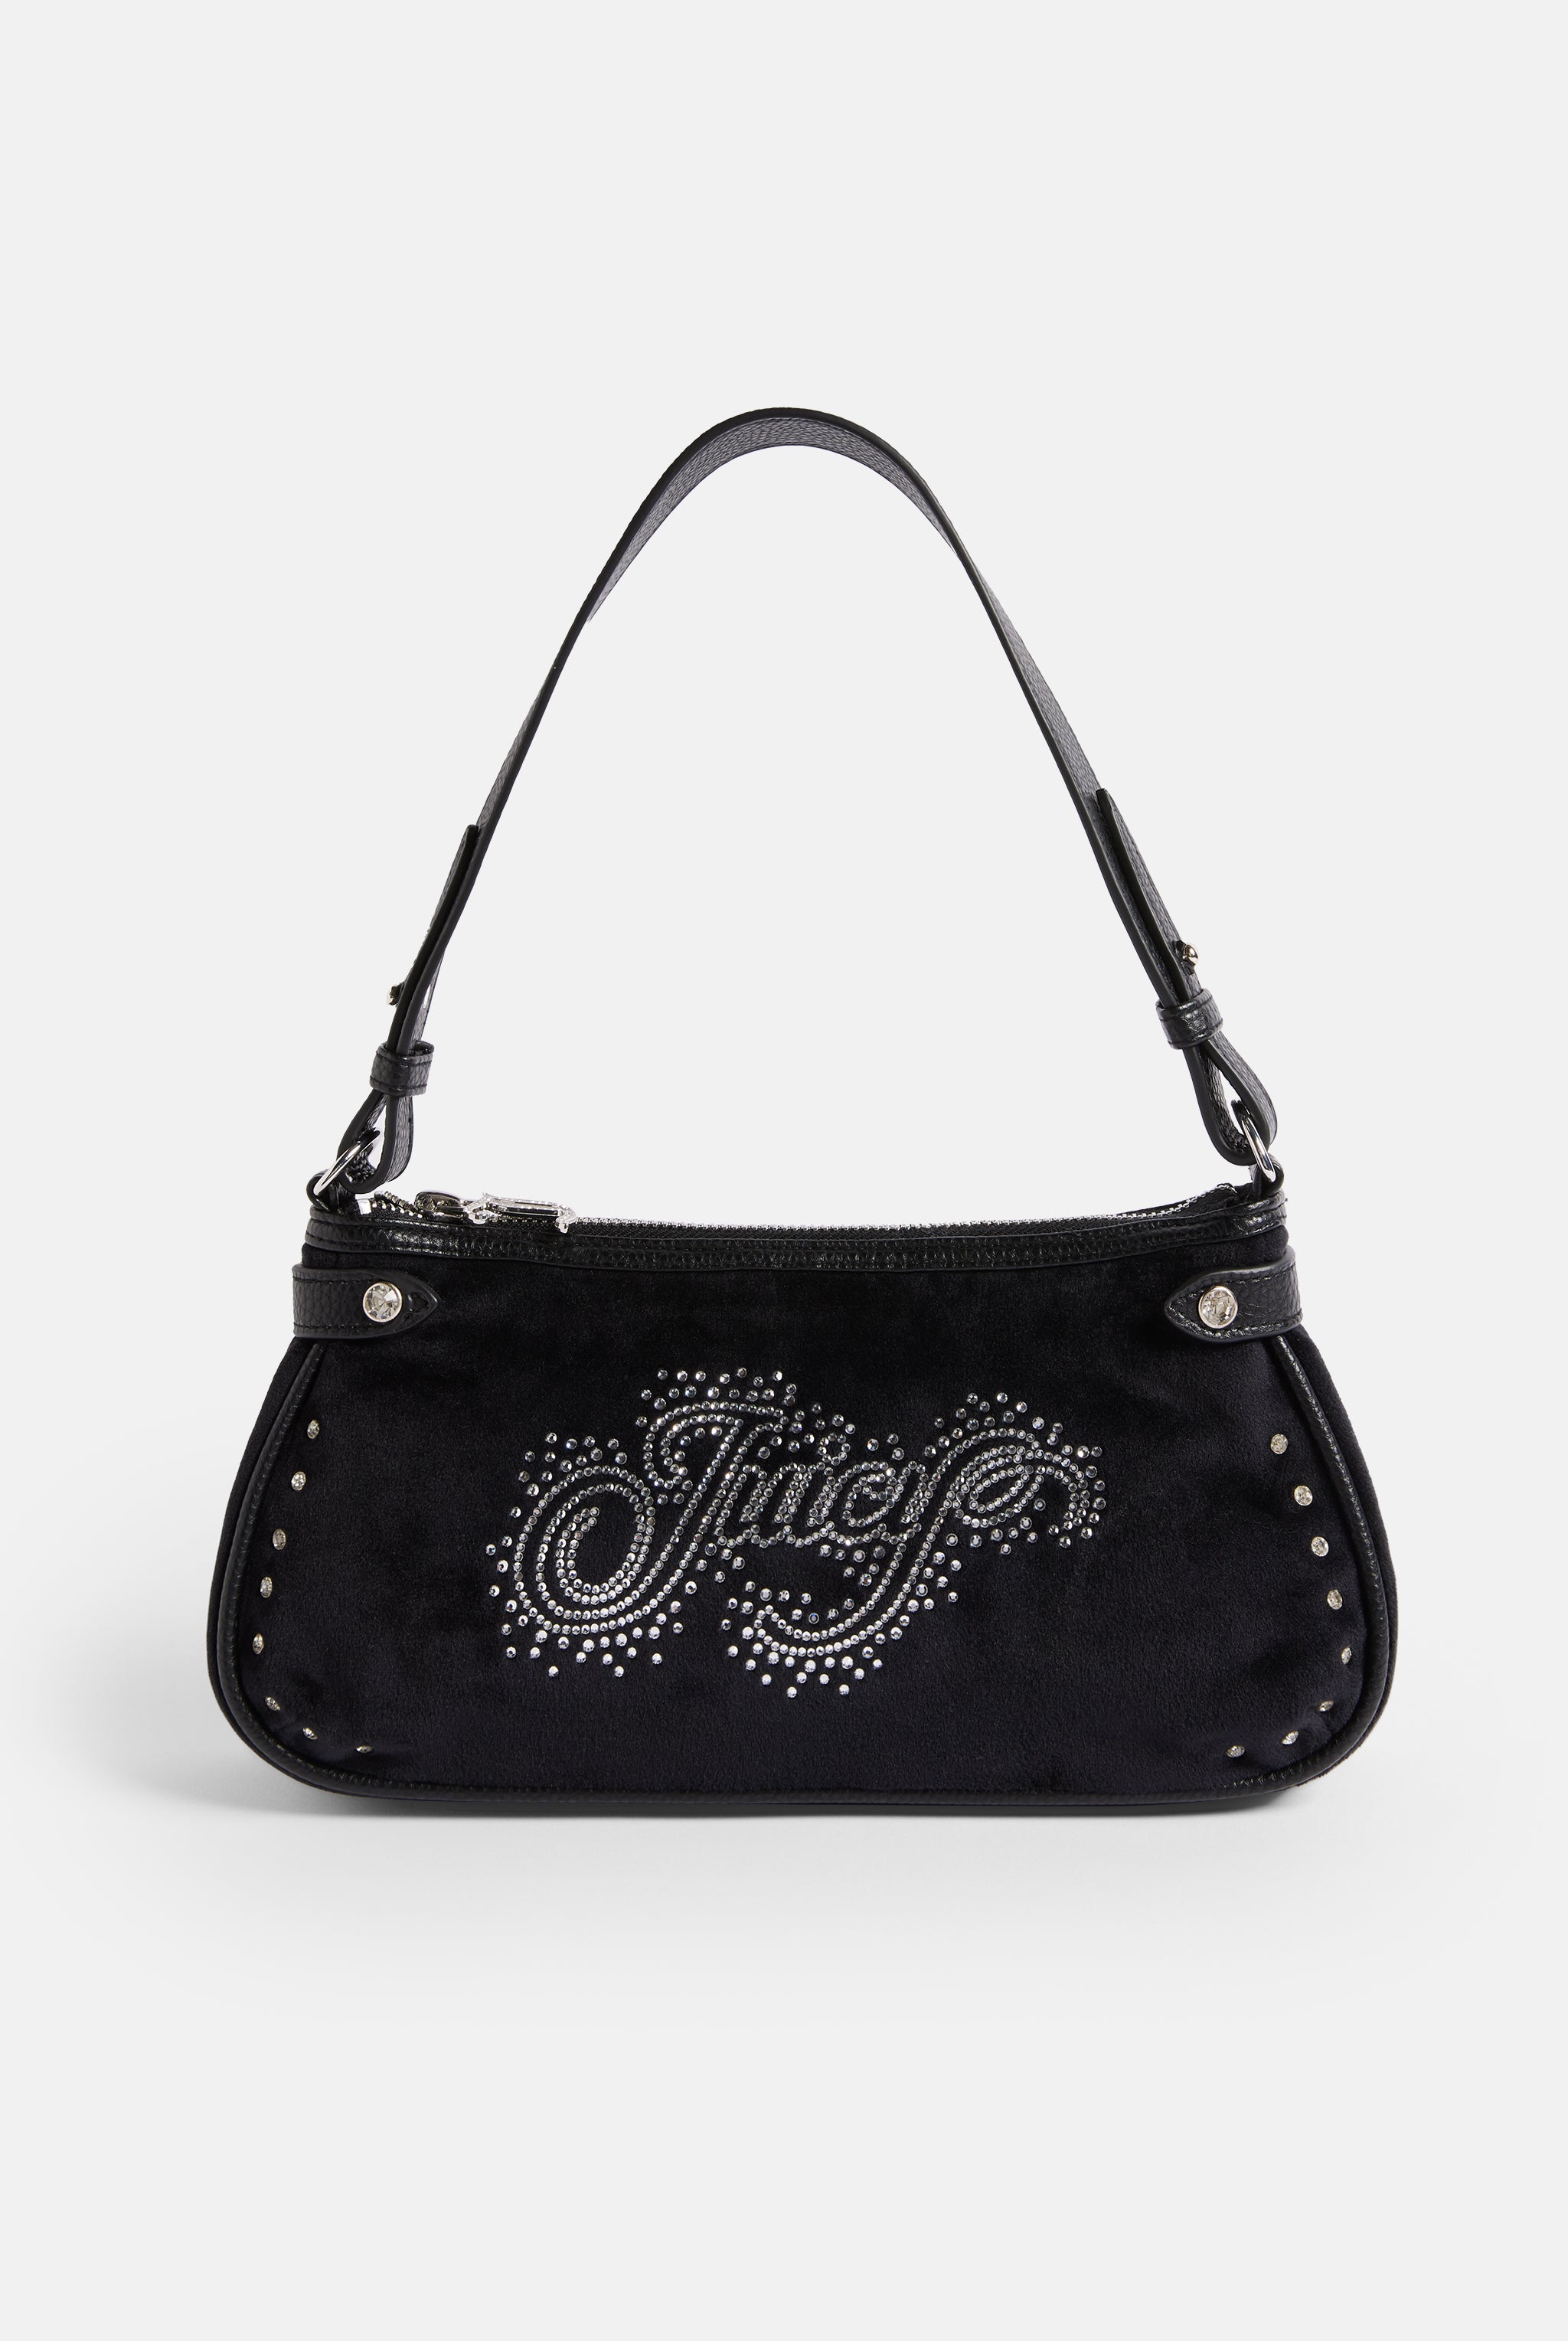 Juicy couture handbags velour - Gem